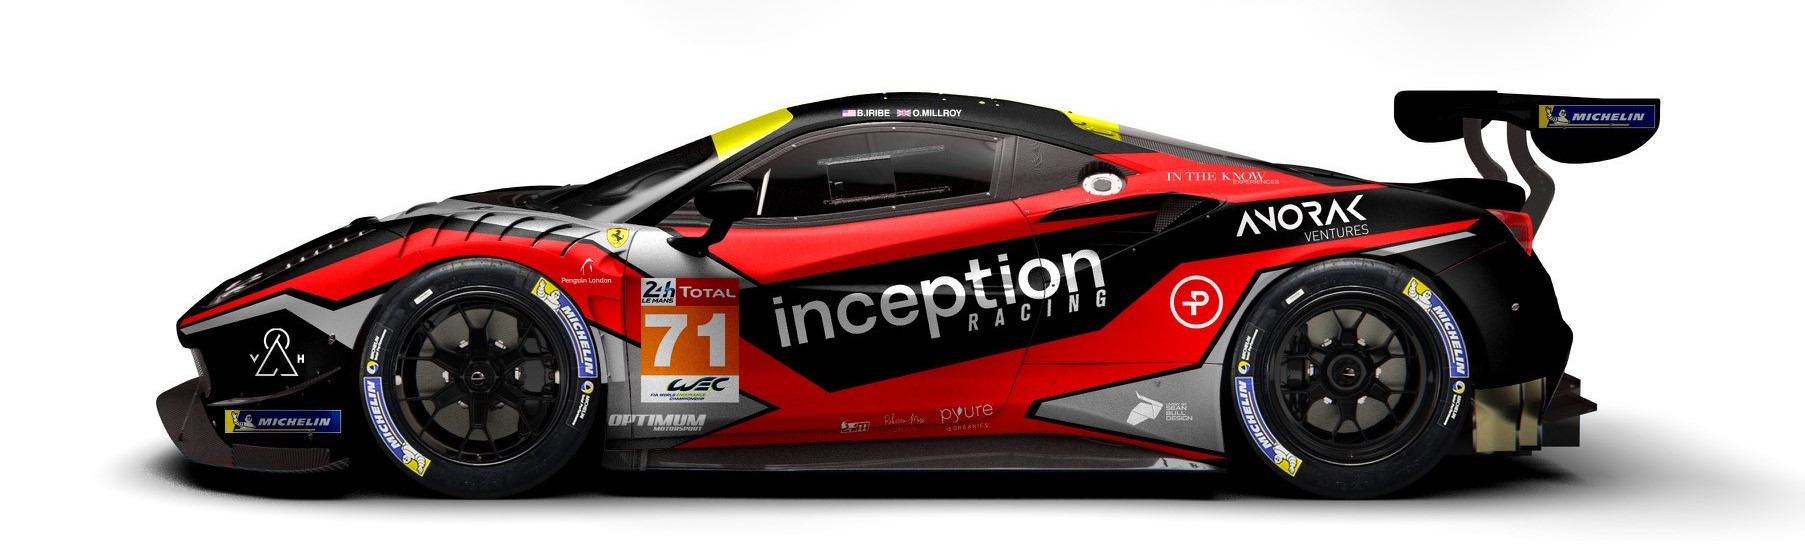 Inception livery Le Mans 